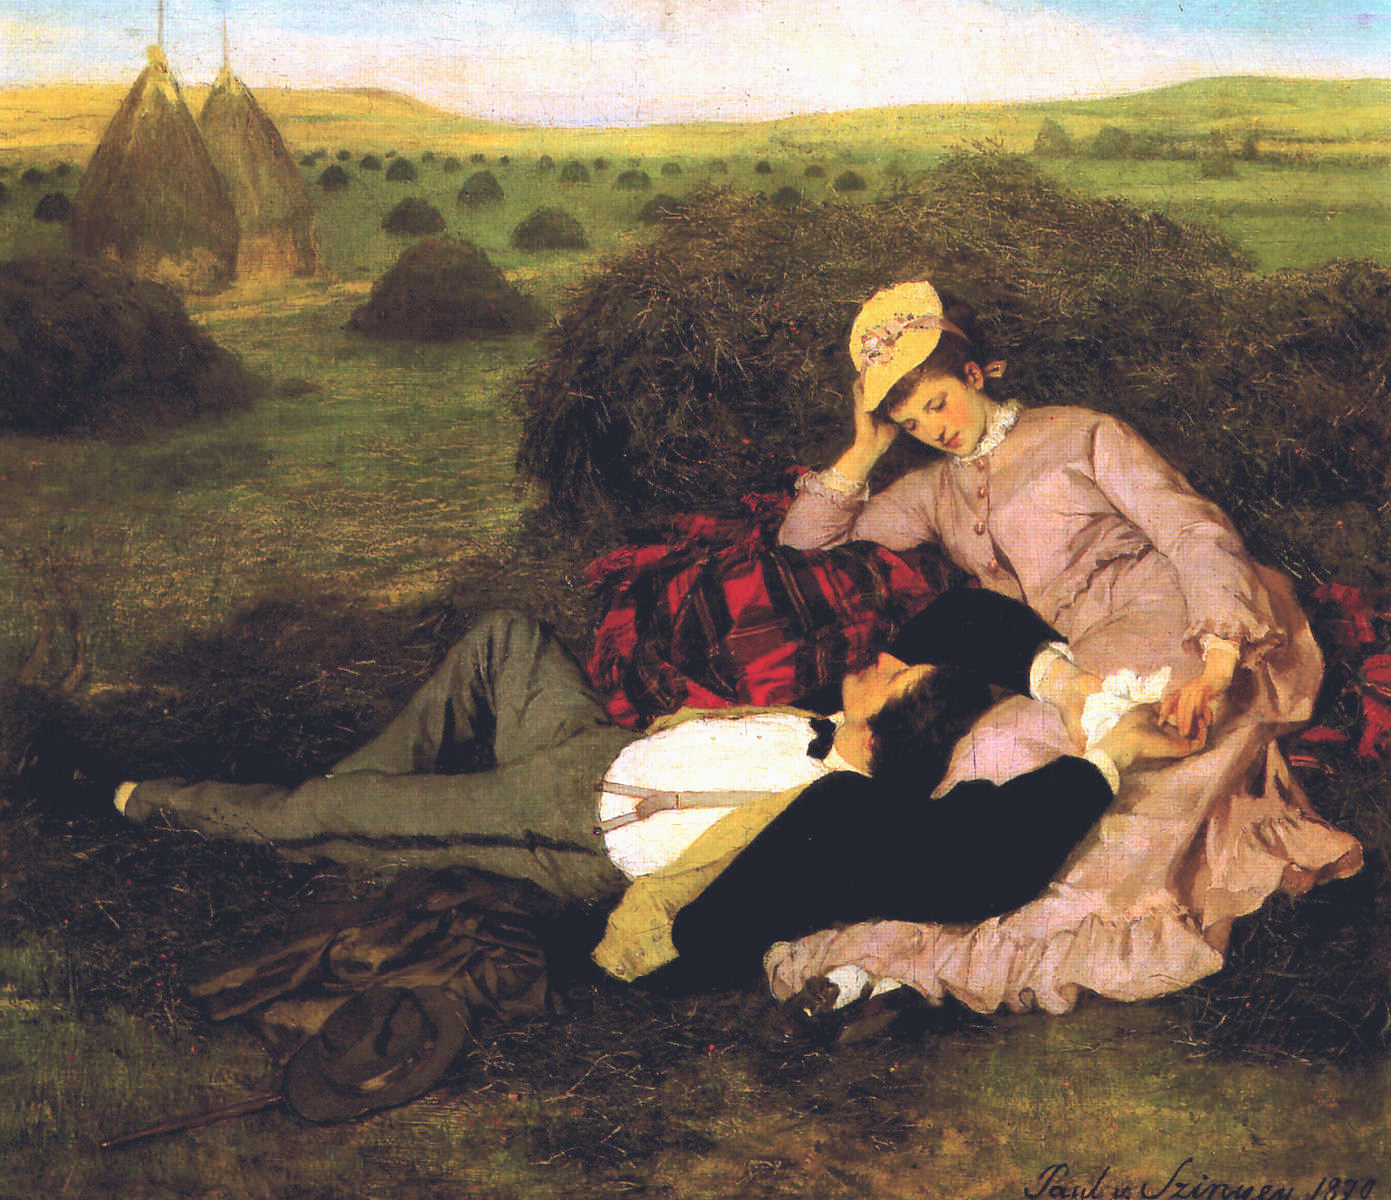 Szerelmespár (Twosome) by Szinyei Merse Pál, 1870